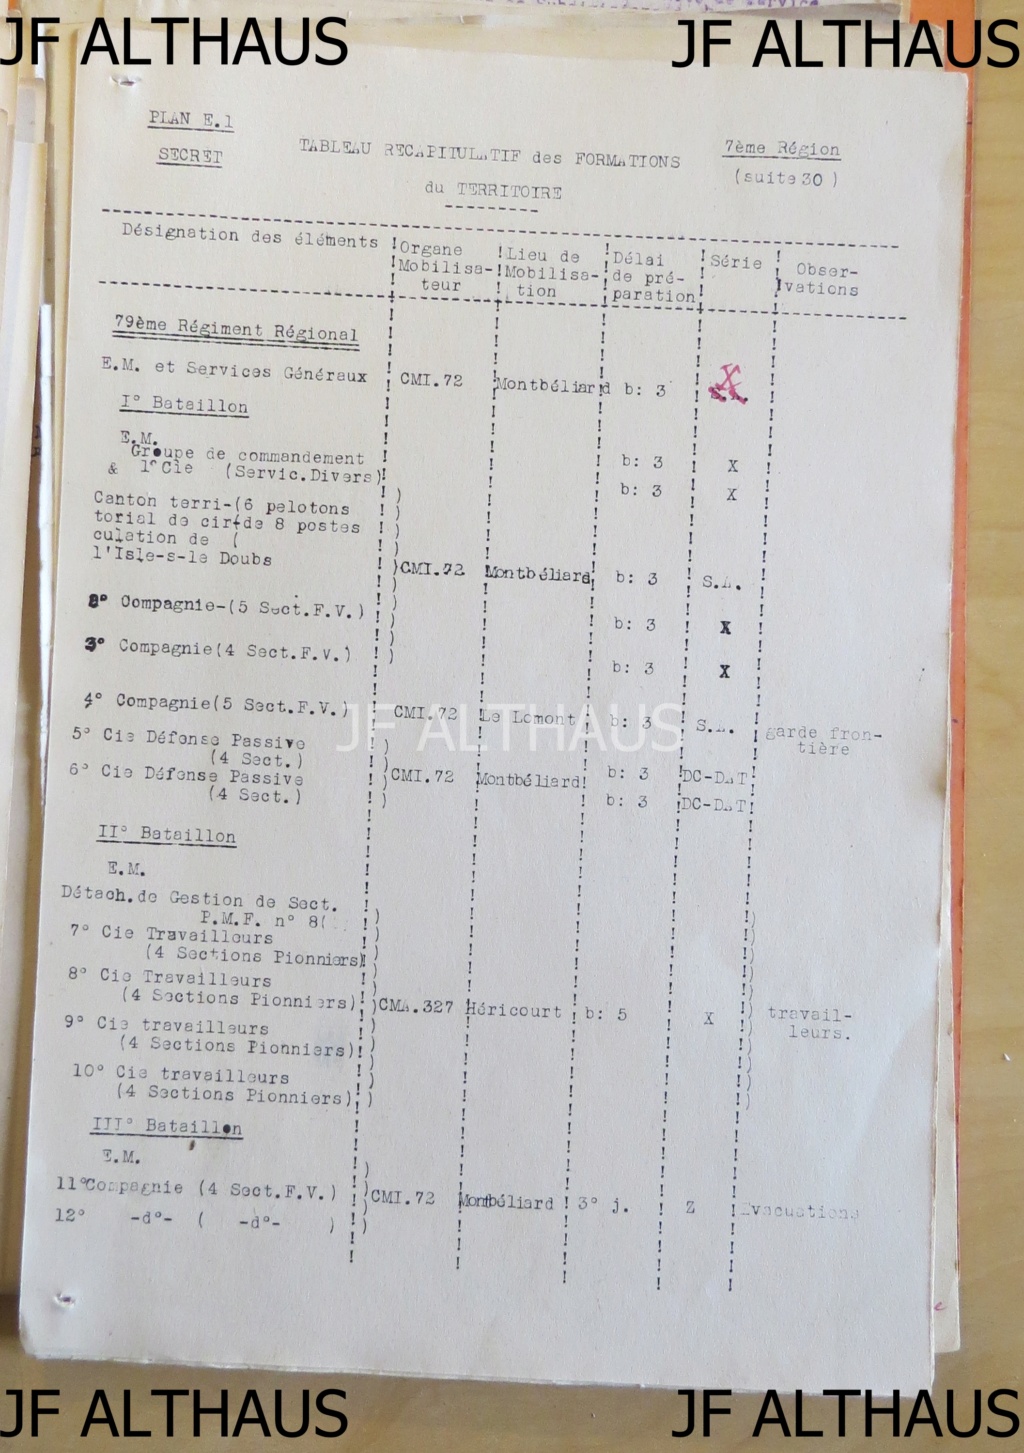 Les régiments régionaux de la 7e région militaire selon le plan E1 à jour en juillet 1939 Img_9933